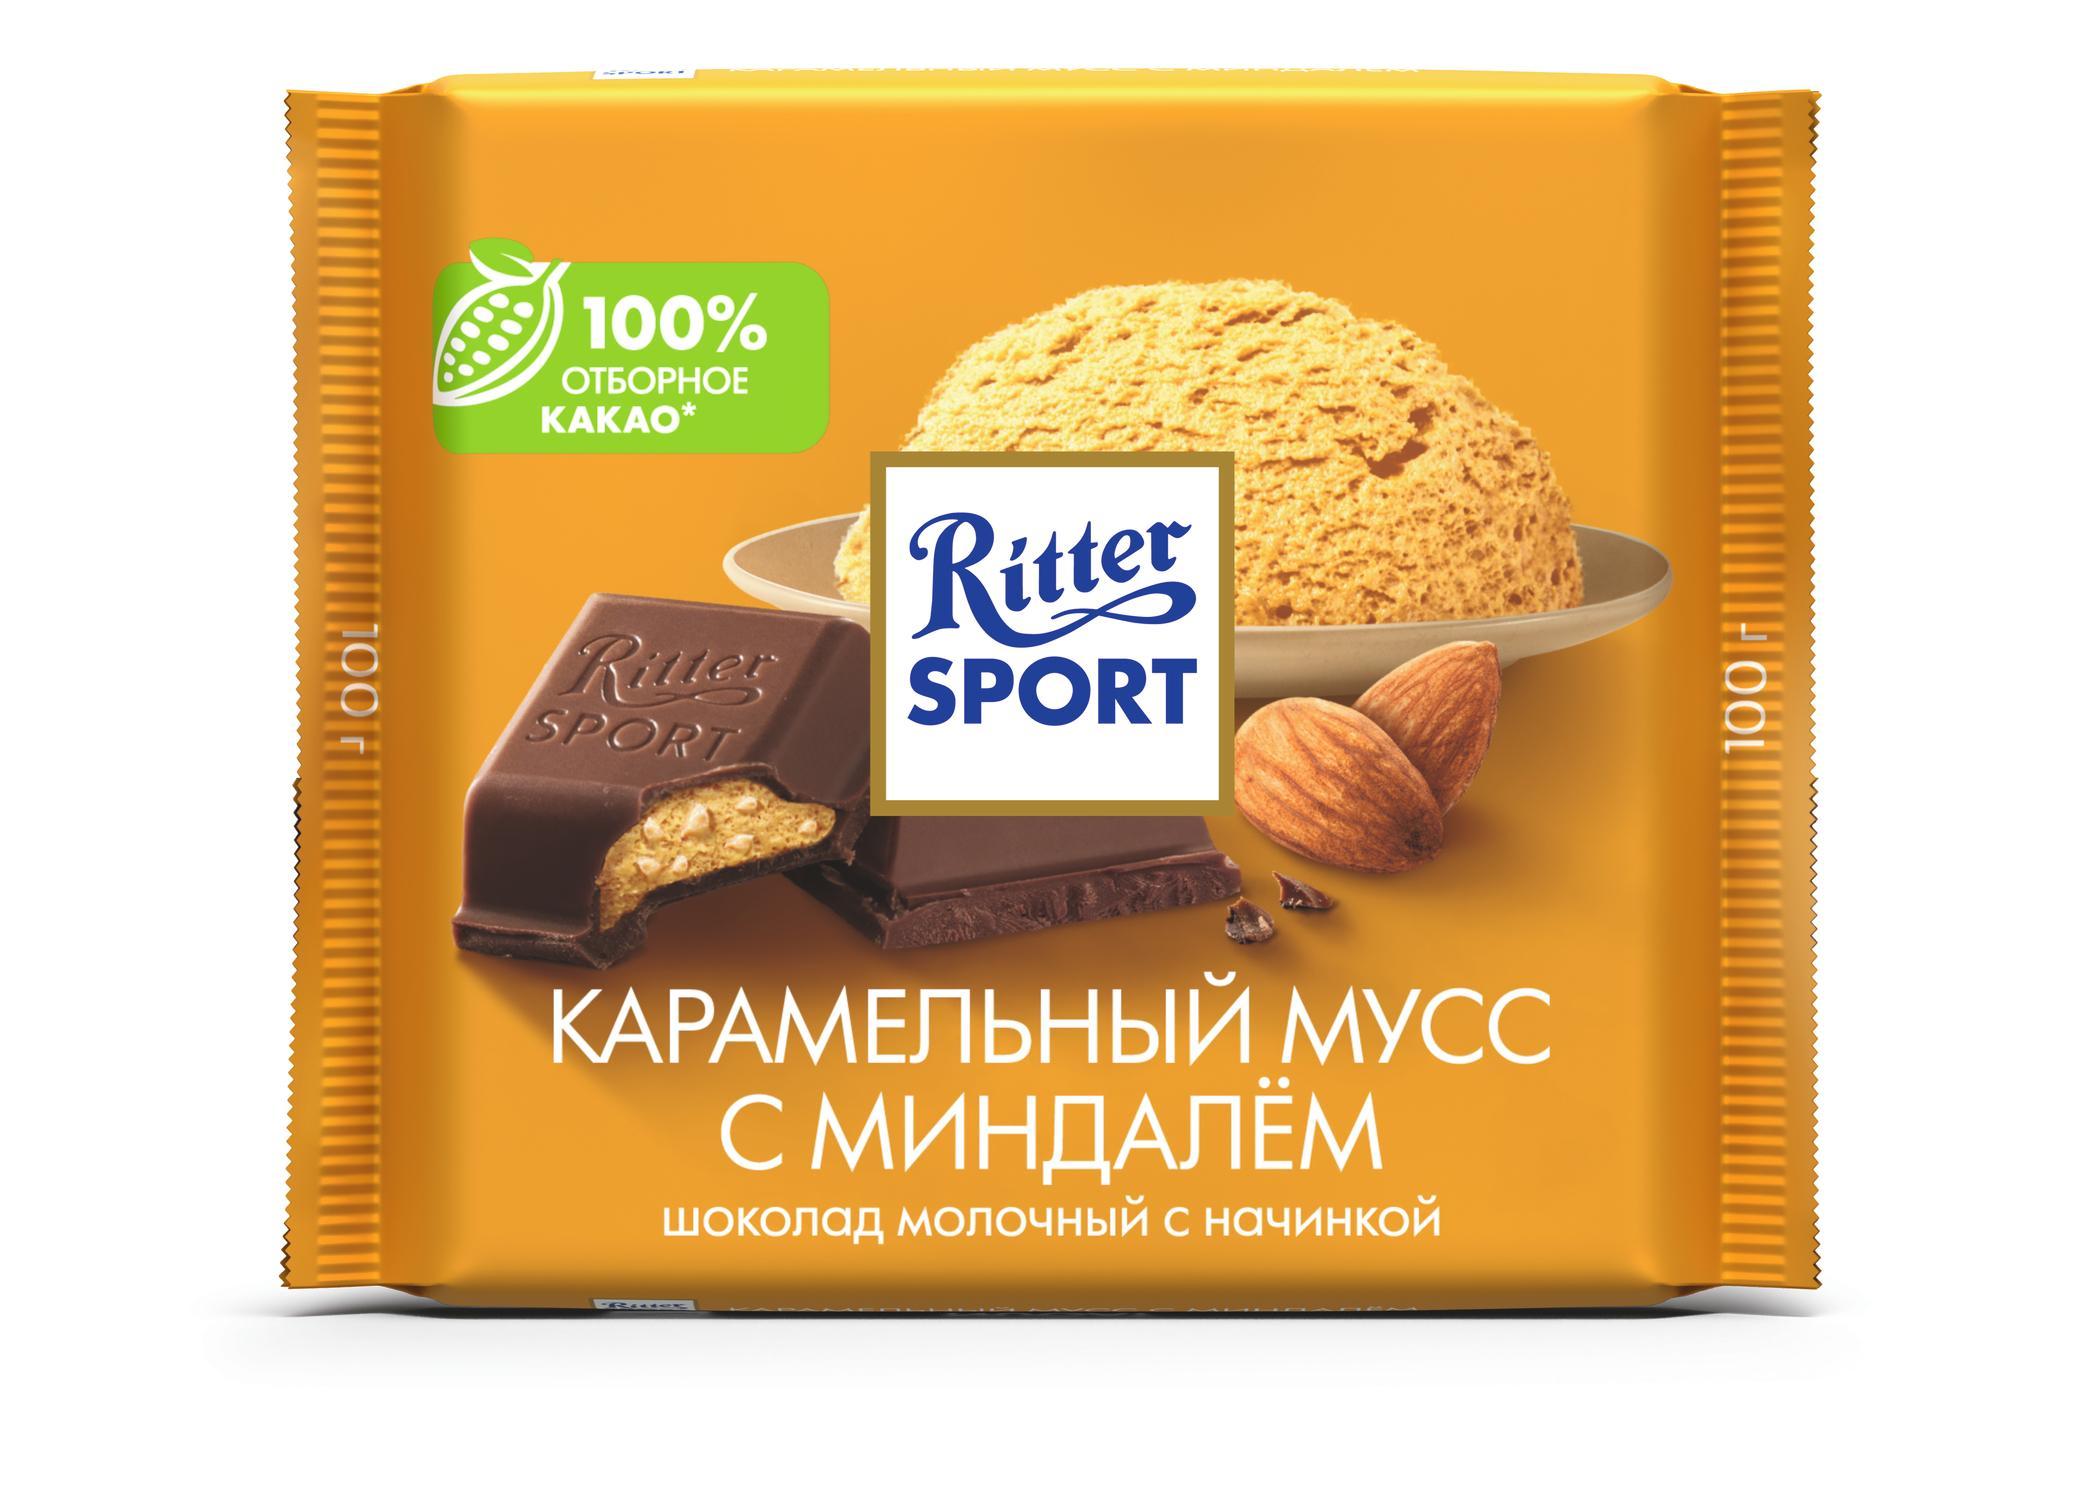 Шоколад Ritter Sport Карамельный мусс 100 гр., флоу-пак